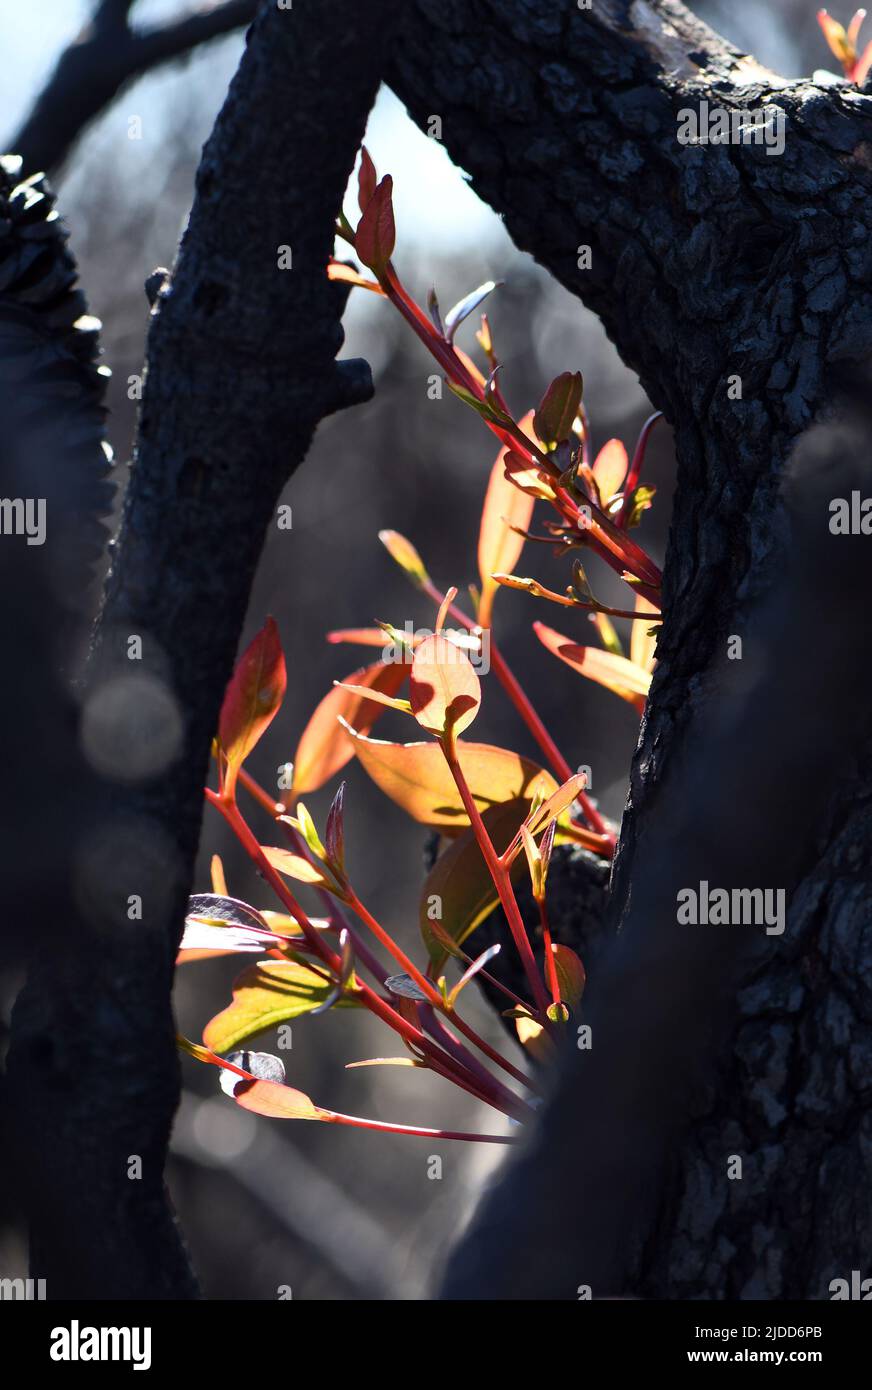 Corteza quemada ennegrecida y nuevo crecimiento de brotes epicormicos en un árbol de goma de eucalipto tras un incendio en Nueva Gales del Sur, Australia. Un rasgo adaptativo del fuego Foto de stock